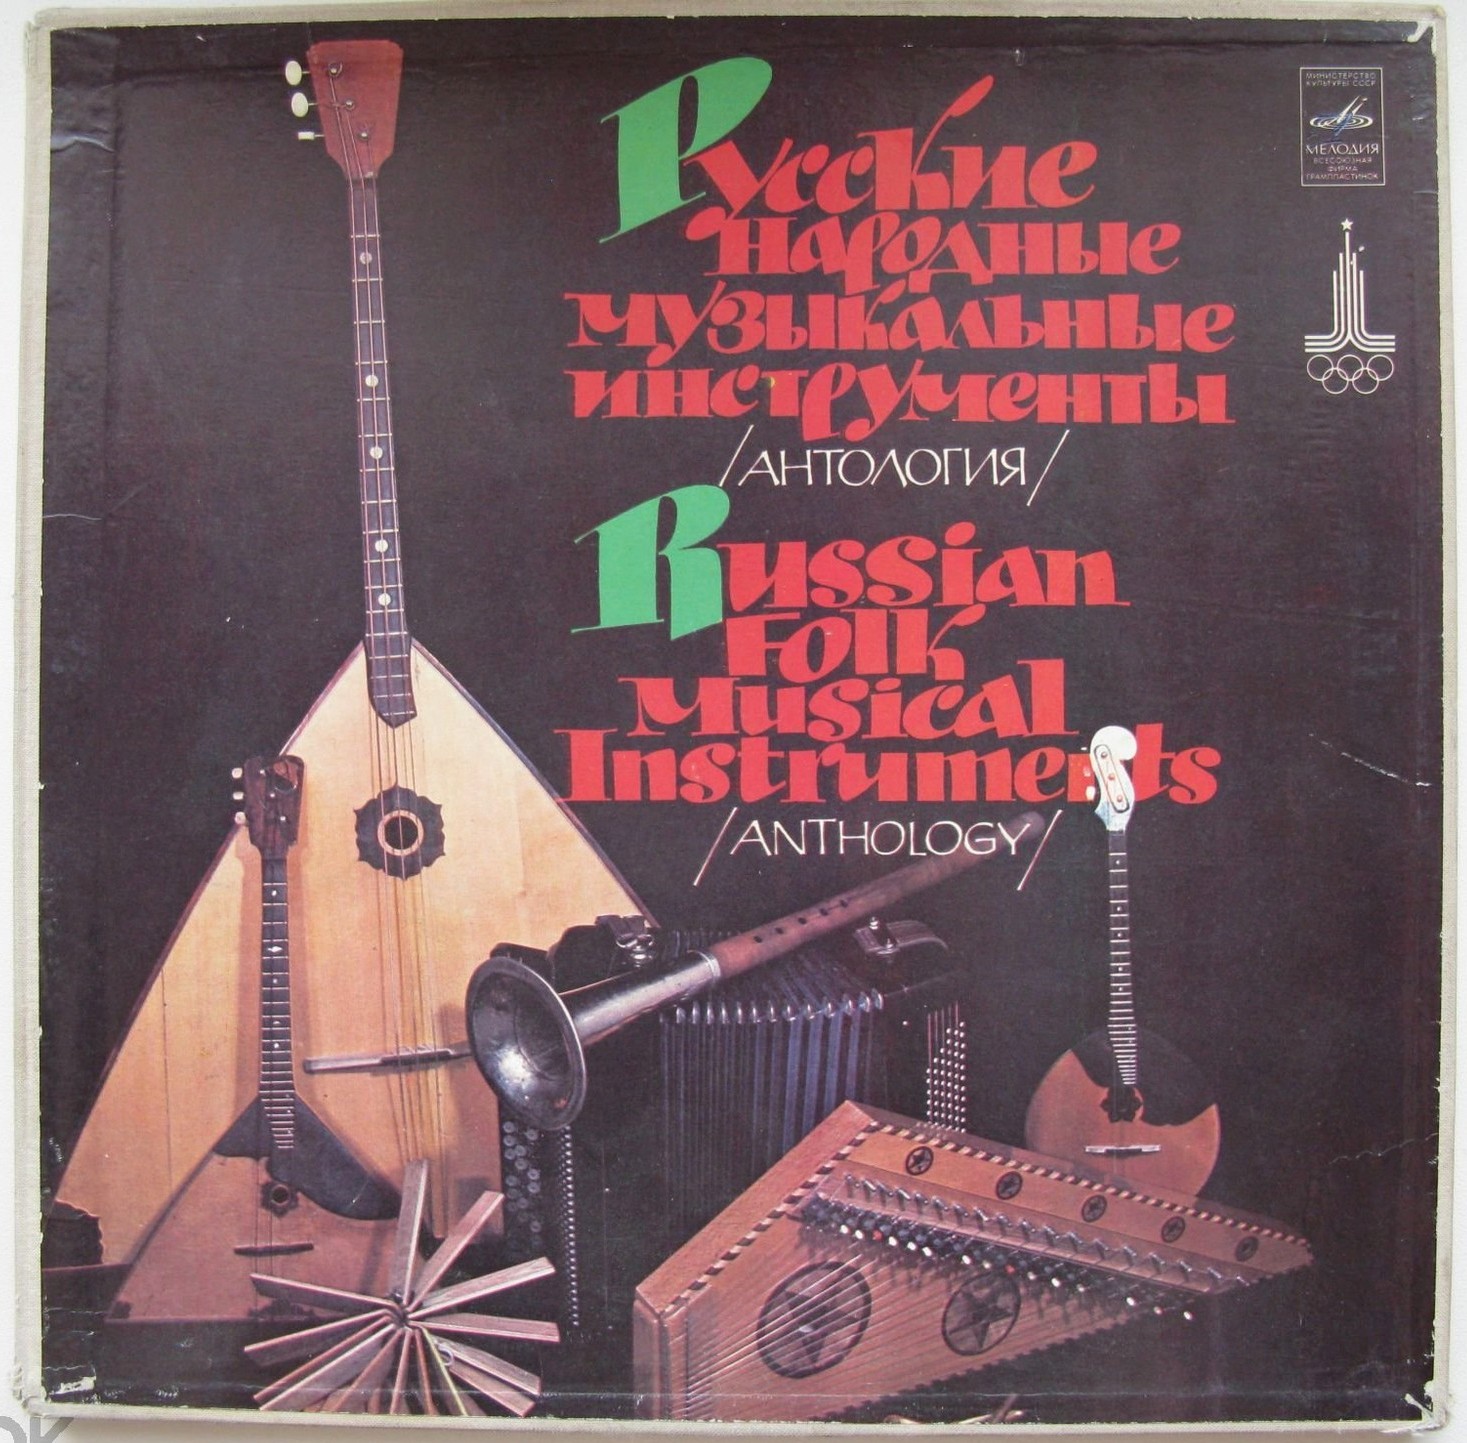 Русские народные музыкальные инструменты (антология)